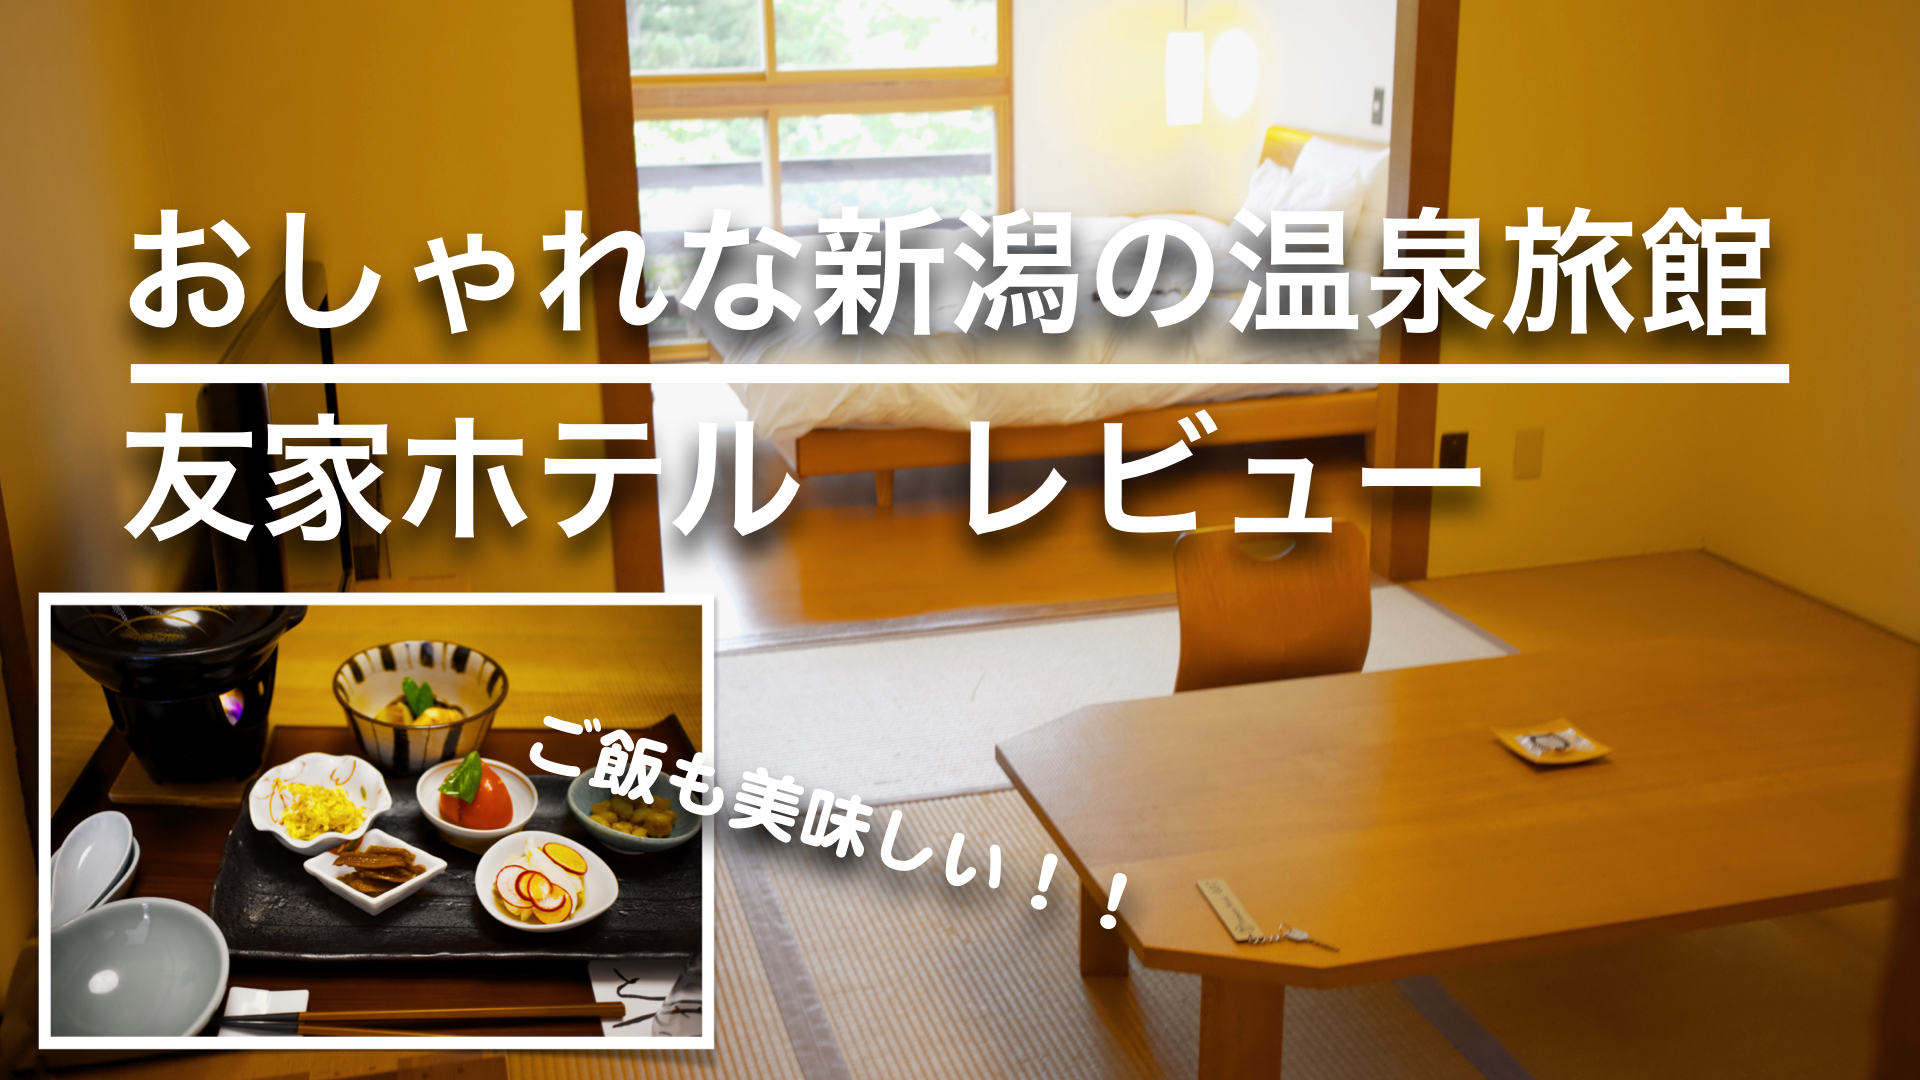 新潟のおしゃれな温泉旅館 友家ホテルに泊まってきた しおりビルヂング